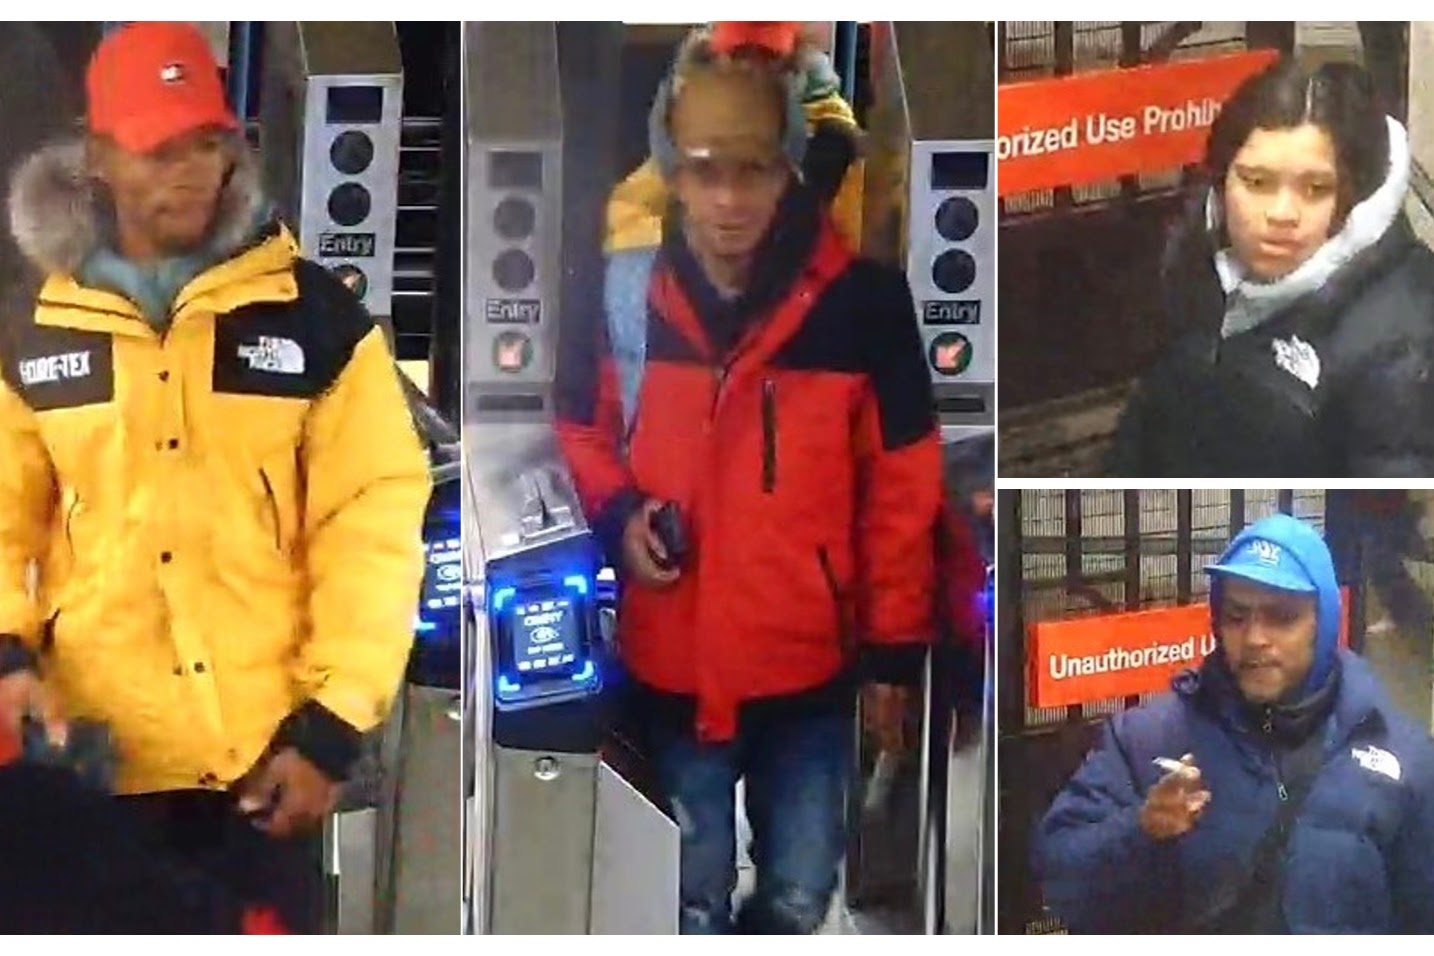 纽约苏豪North Face商店遭连日盗窃警方公布11名嫌犯照片| 抢劫| 大纪元